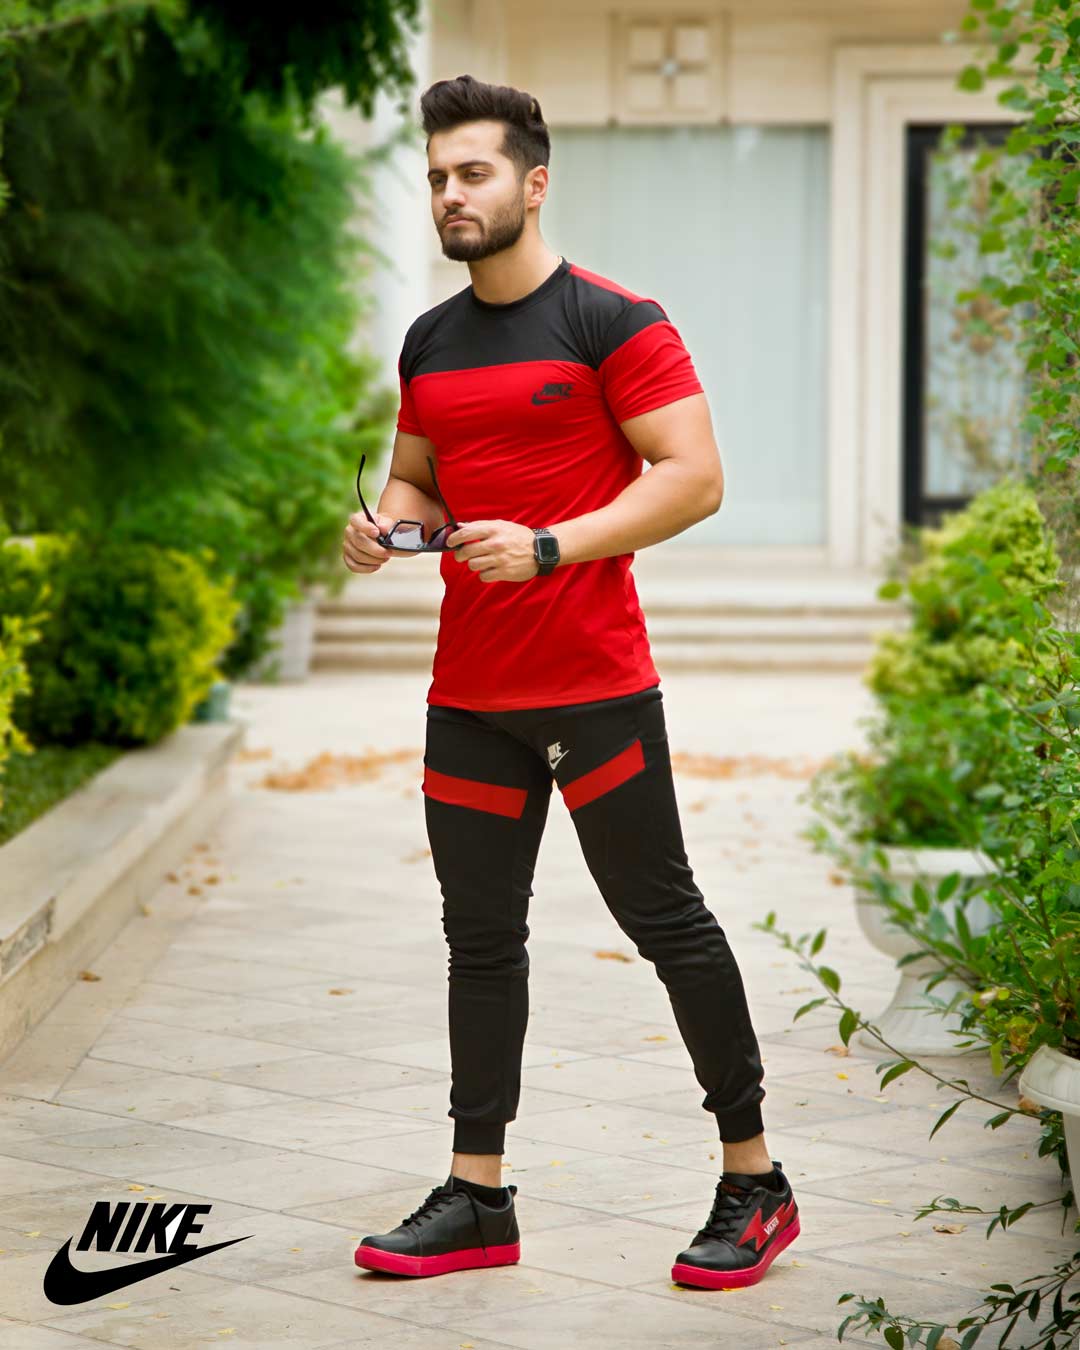 ست تیشرت شلوار مردانه Nike مدل Macan (قرمزمشکی) - فروشگاه اینترنتی تی شین